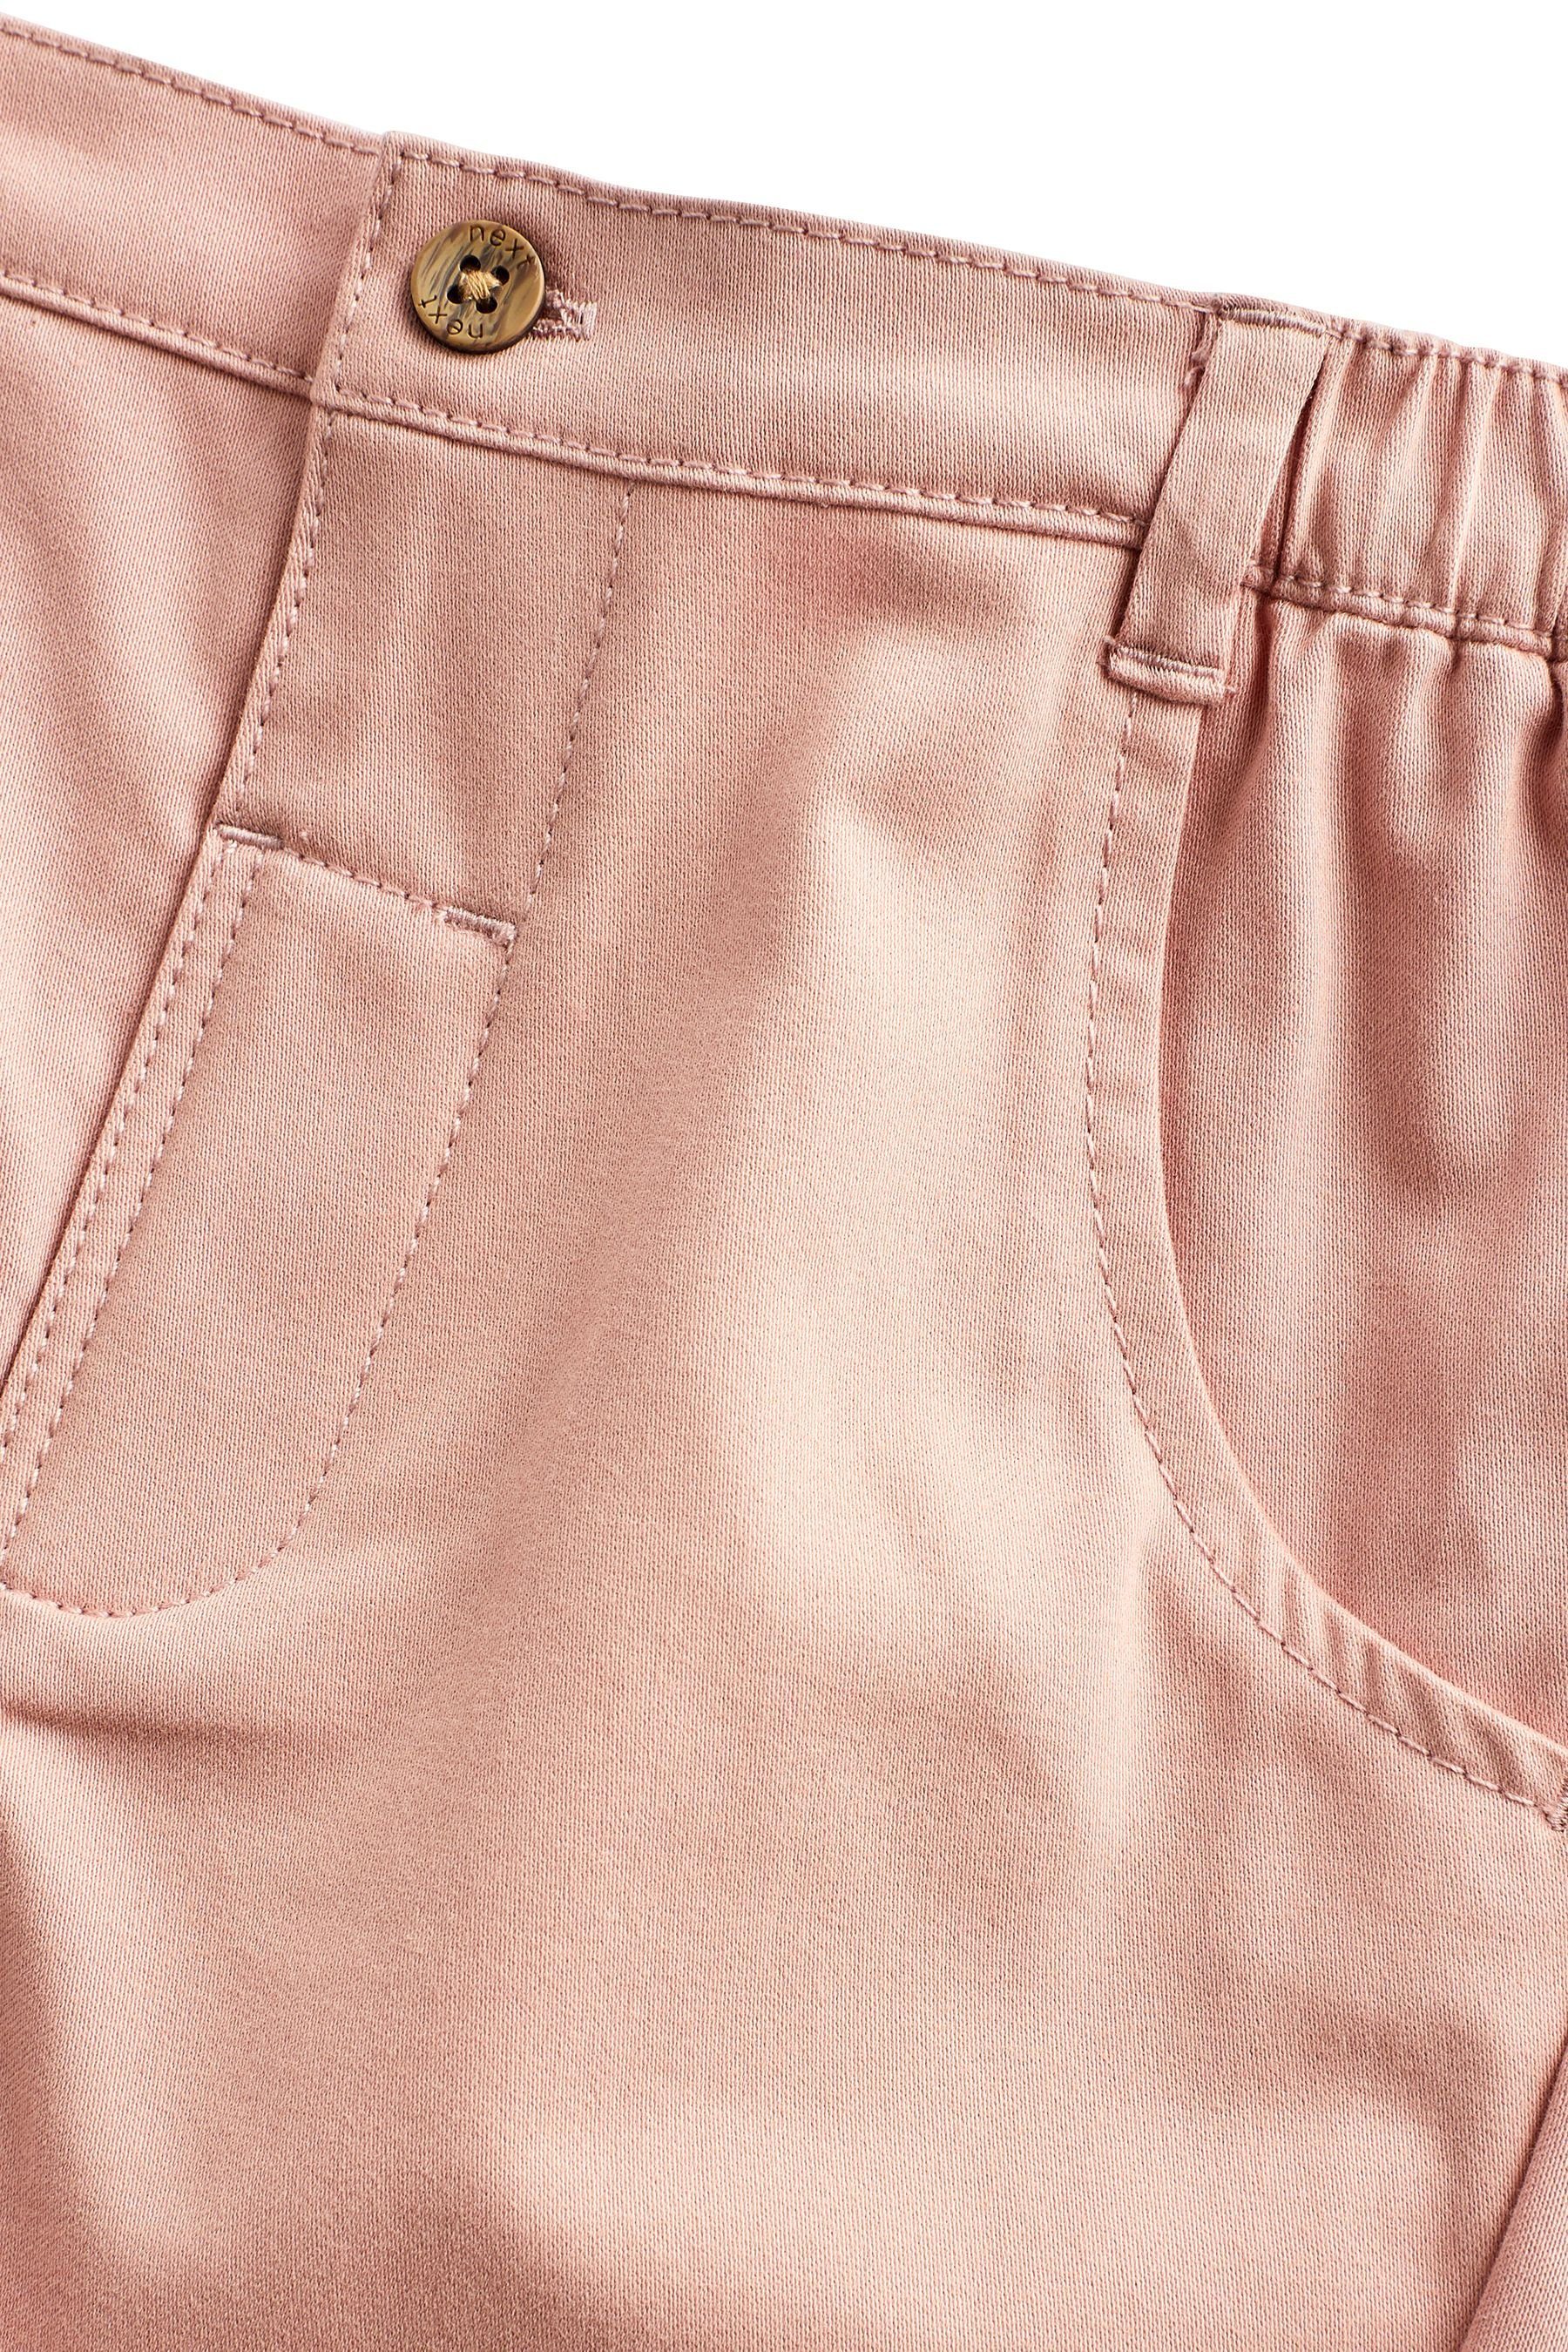 Next Hemd & Hose und mit 2-teiliges Baby-Set Bodysuit Hose (2-tlg)